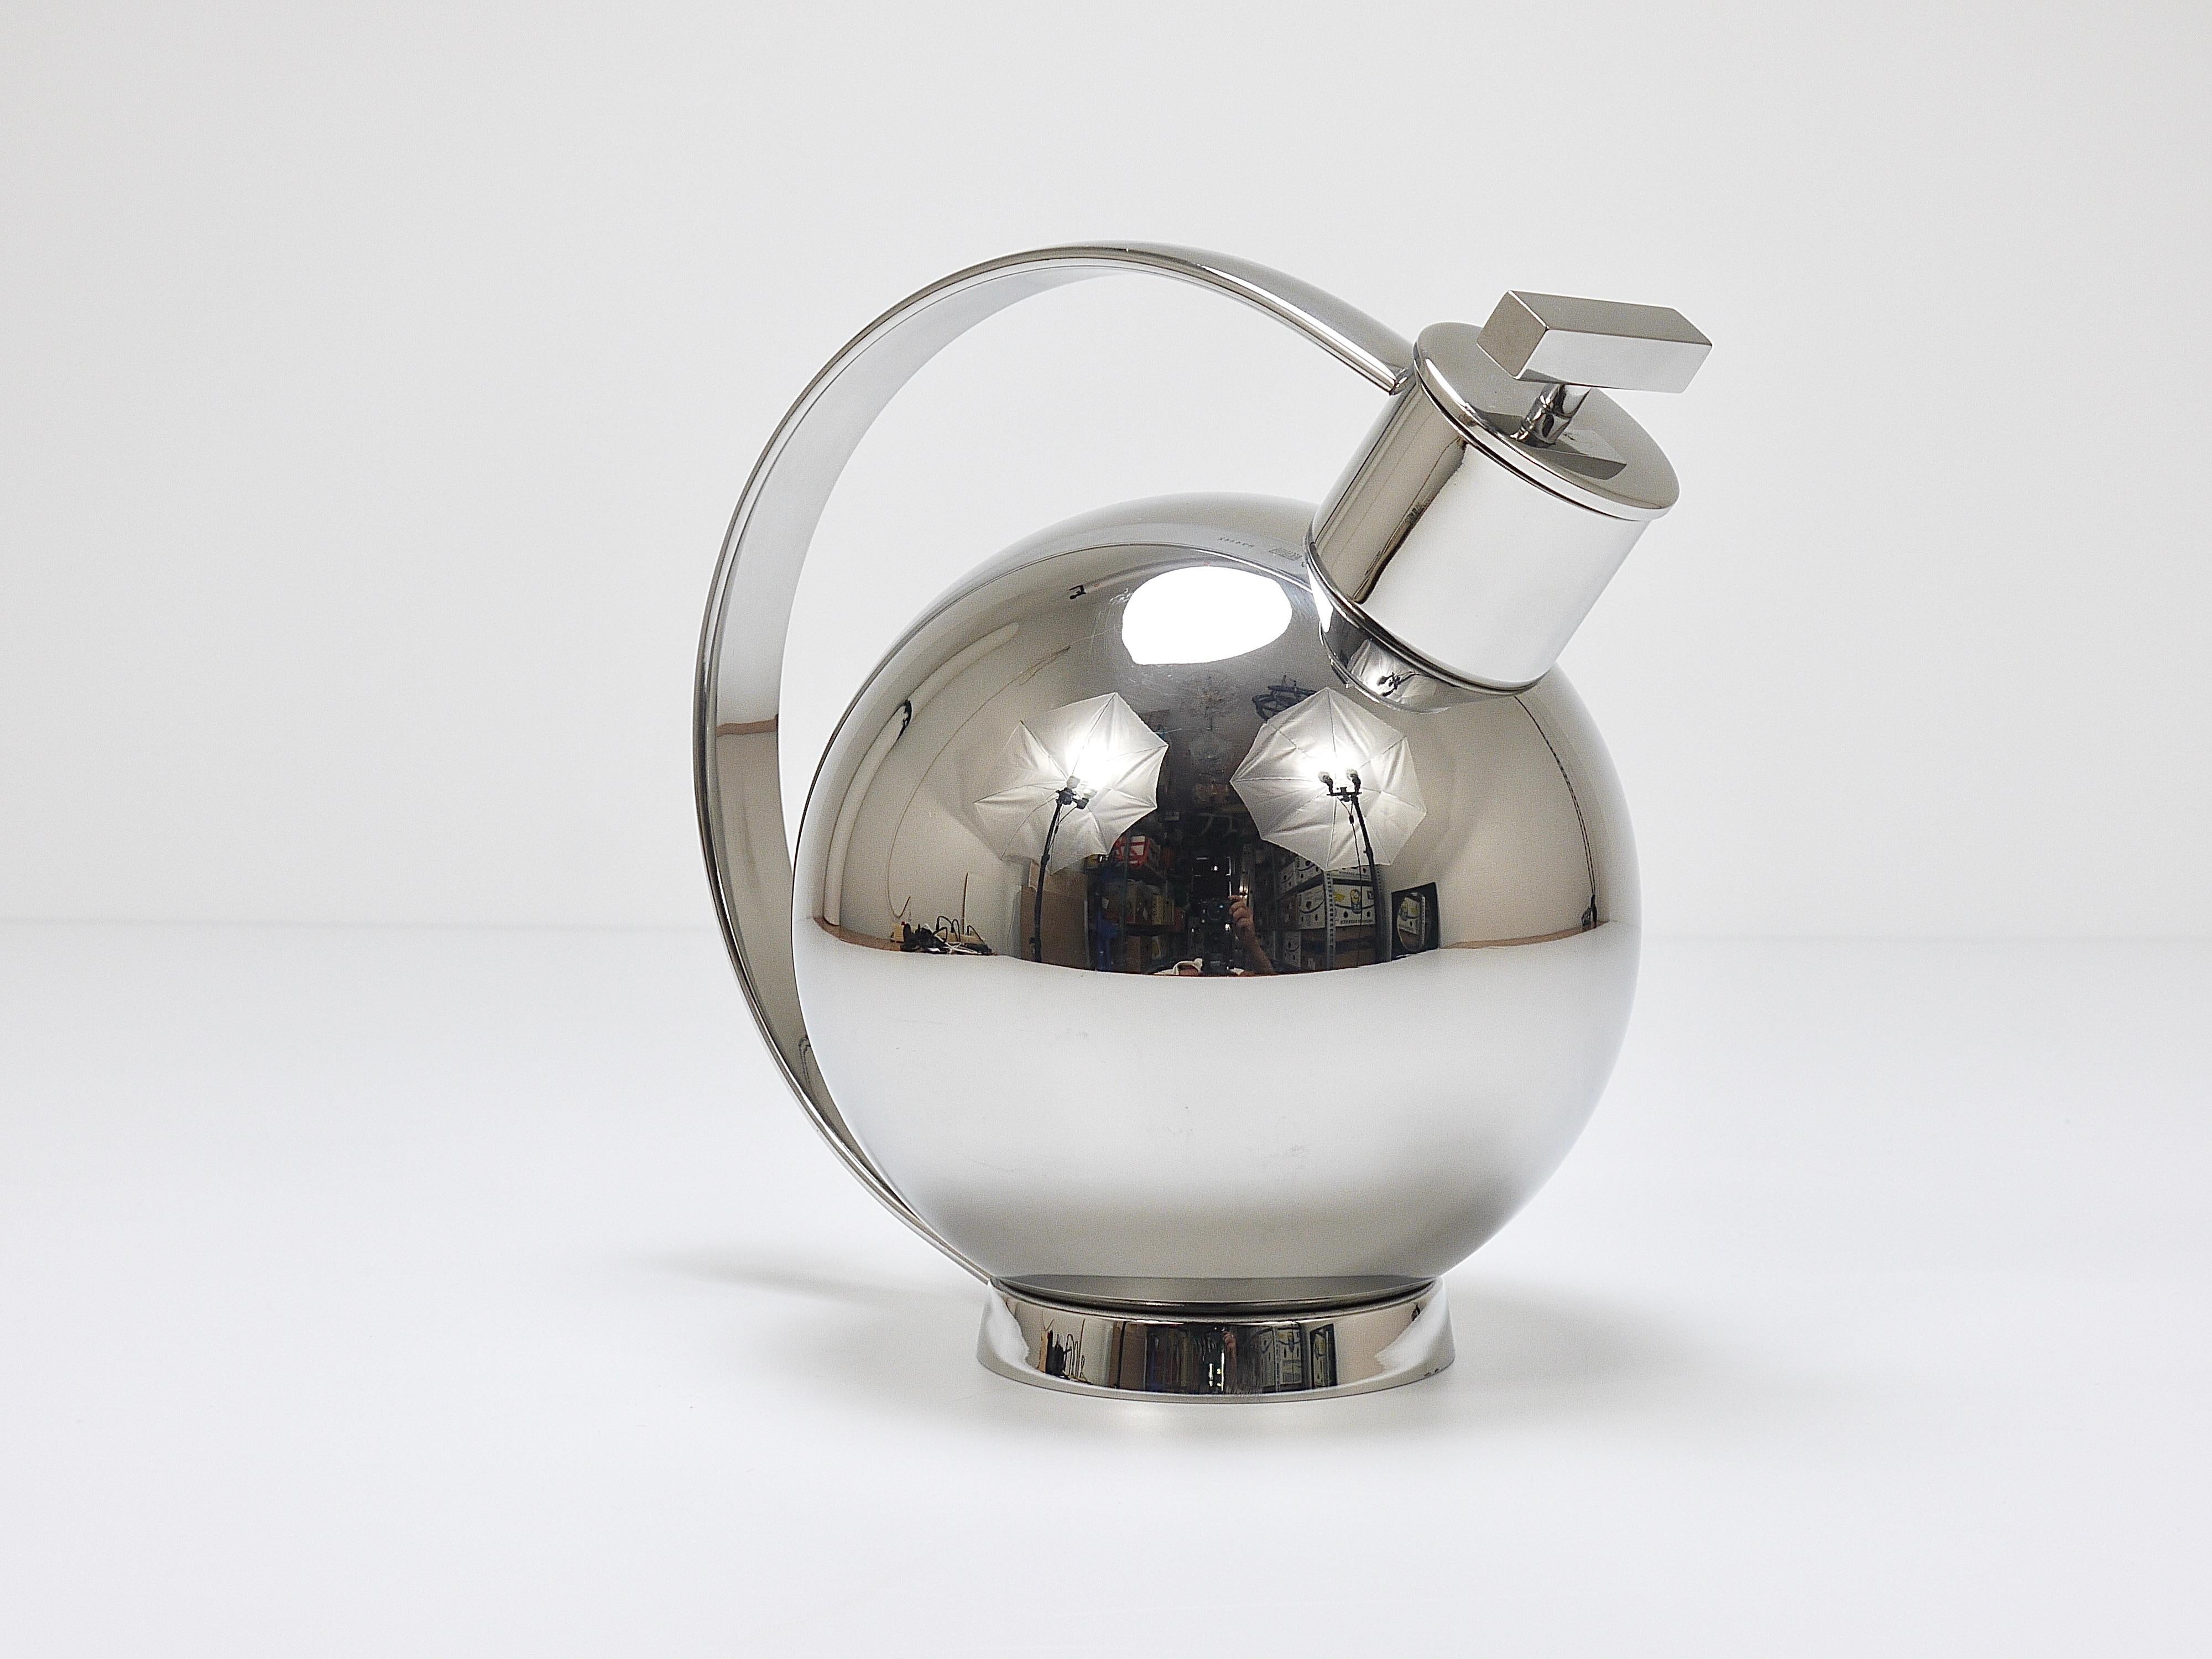 Un shaker emblématique de l'Art déco mais postmoderne, conçu en 1925 par la designer suédoise Sylvia Stave (1908 - 1994), réédité en 1989 par Officina Alessi Italy. Modèle no. 90021, en acier inoxydable 18/10 chromé, ce bel objet est très souvent